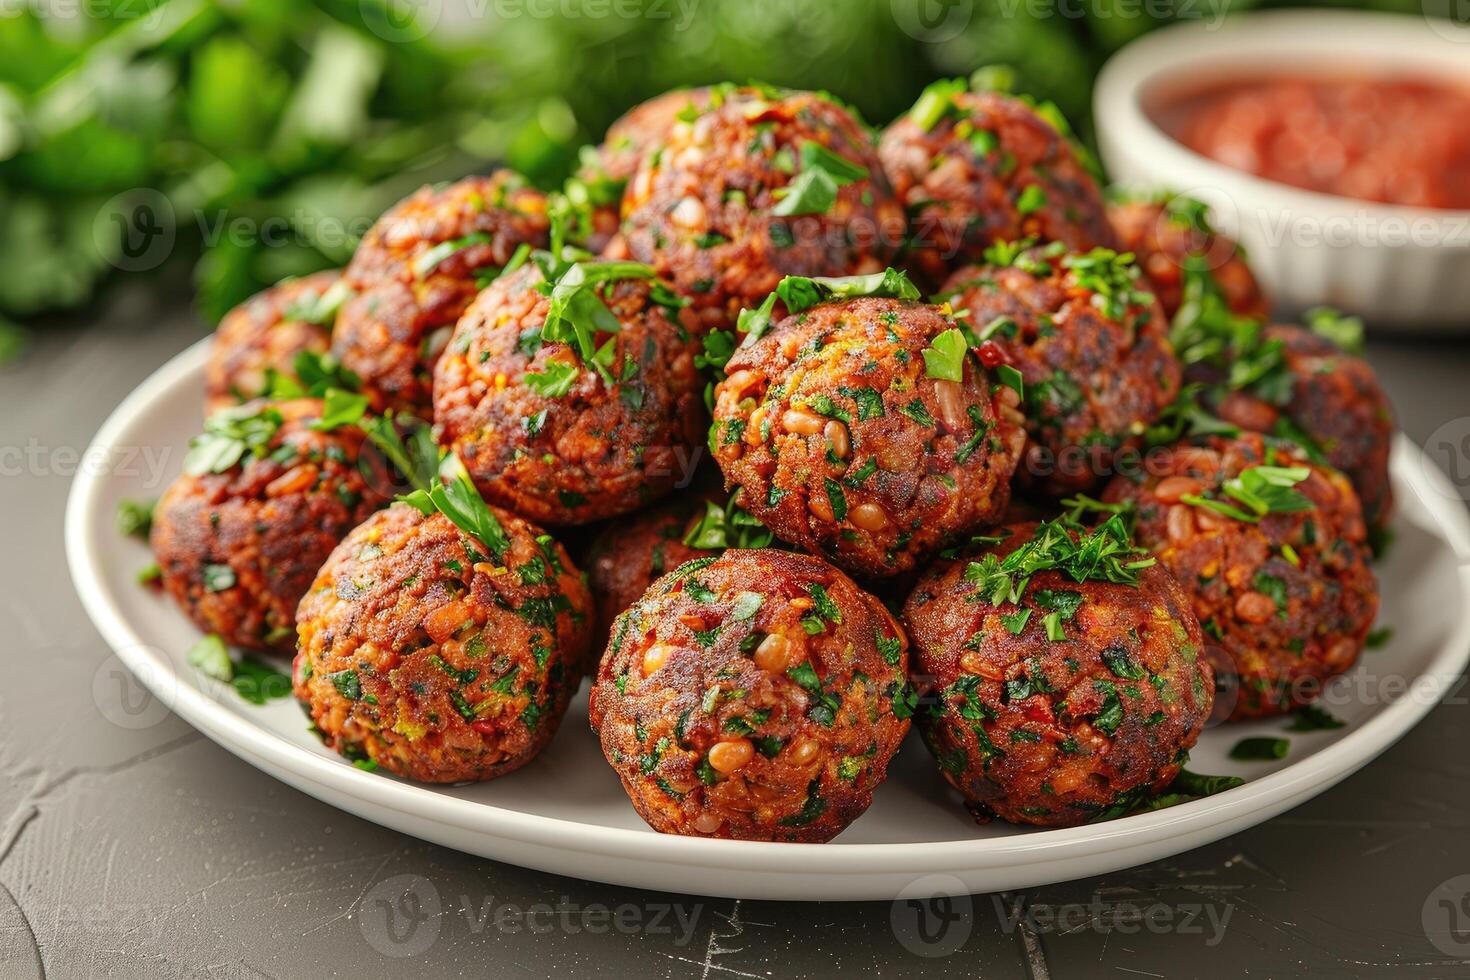 falafels son profundo frito pelotas tradicionalmente encontró en medio oriental cocina comida profesional publicidad comida fotografía foto